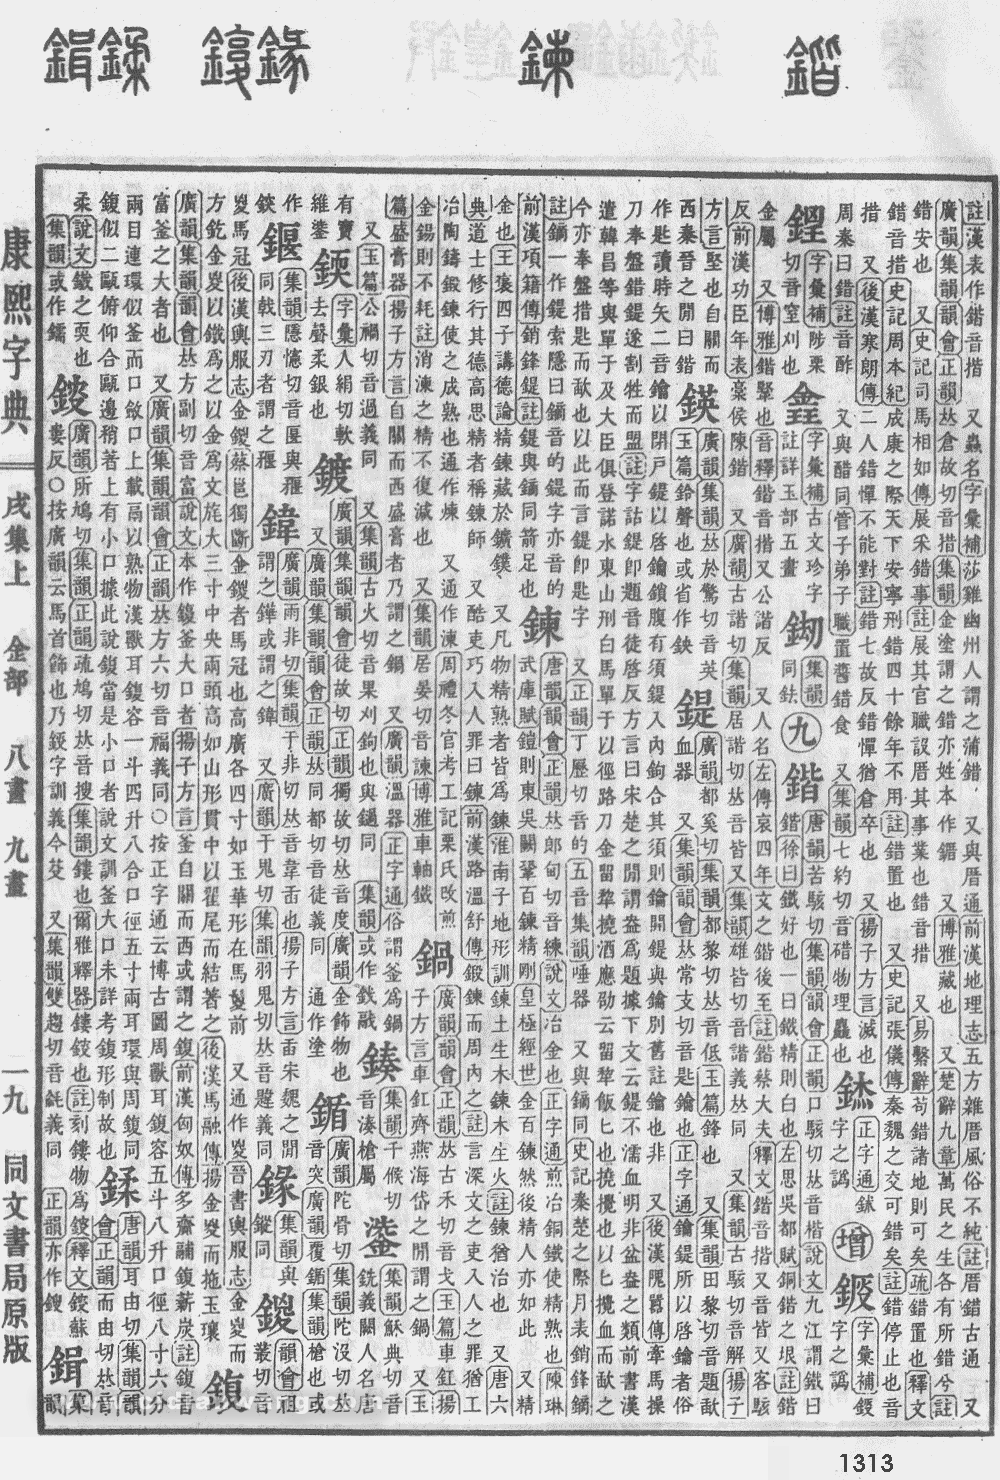 康熙字典掃描版第1313頁